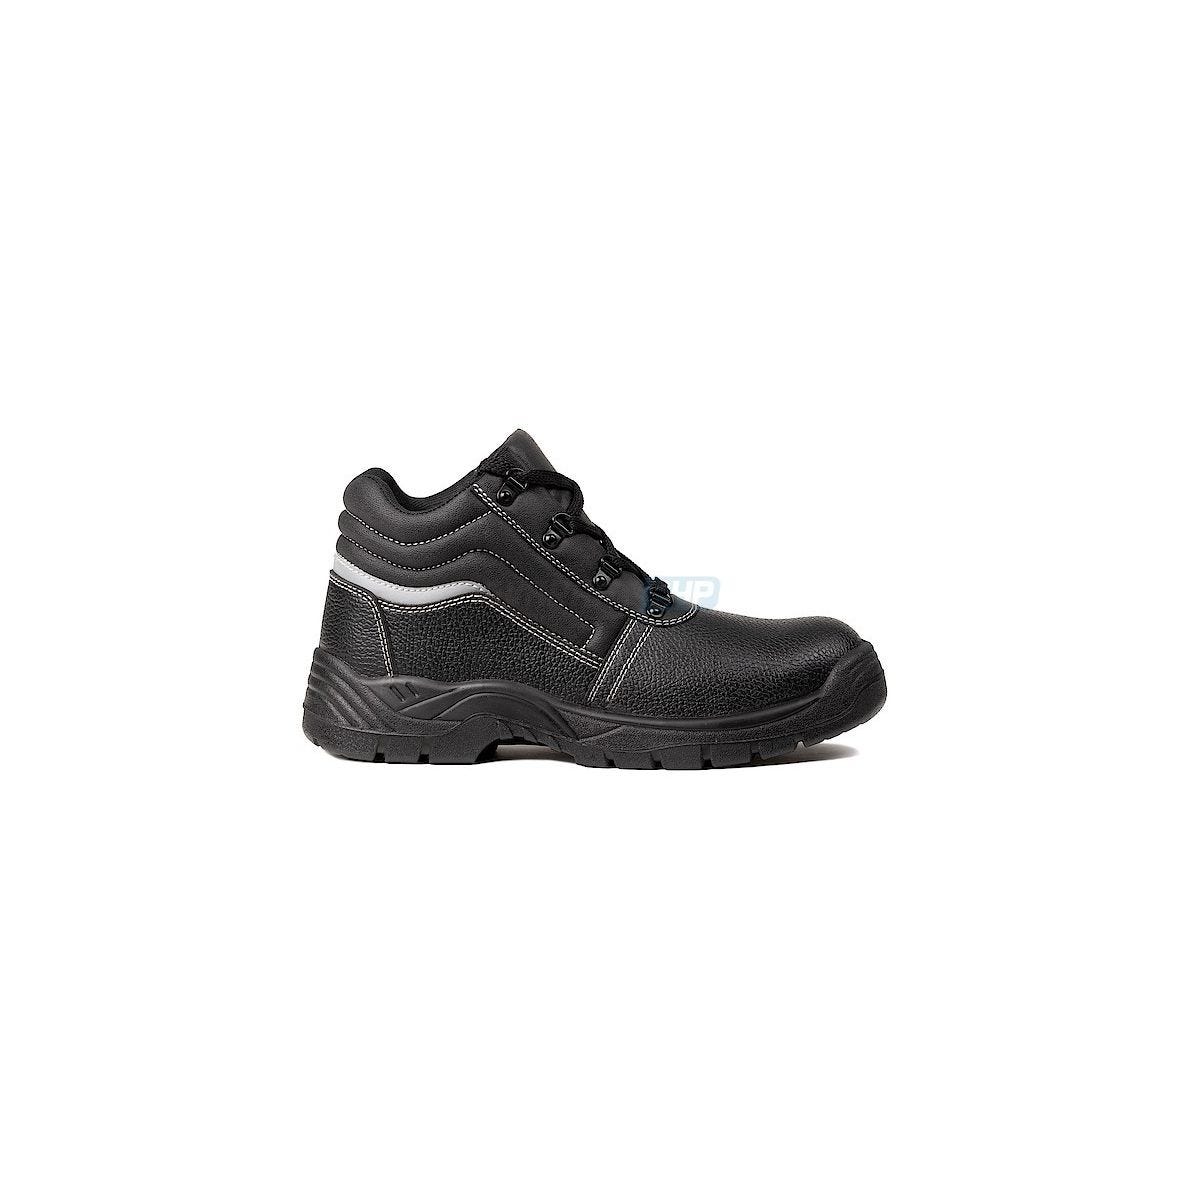 Chaussures de sécurité NACRITE S1P Haute Noir - COVERGUARD - Taille 42 0